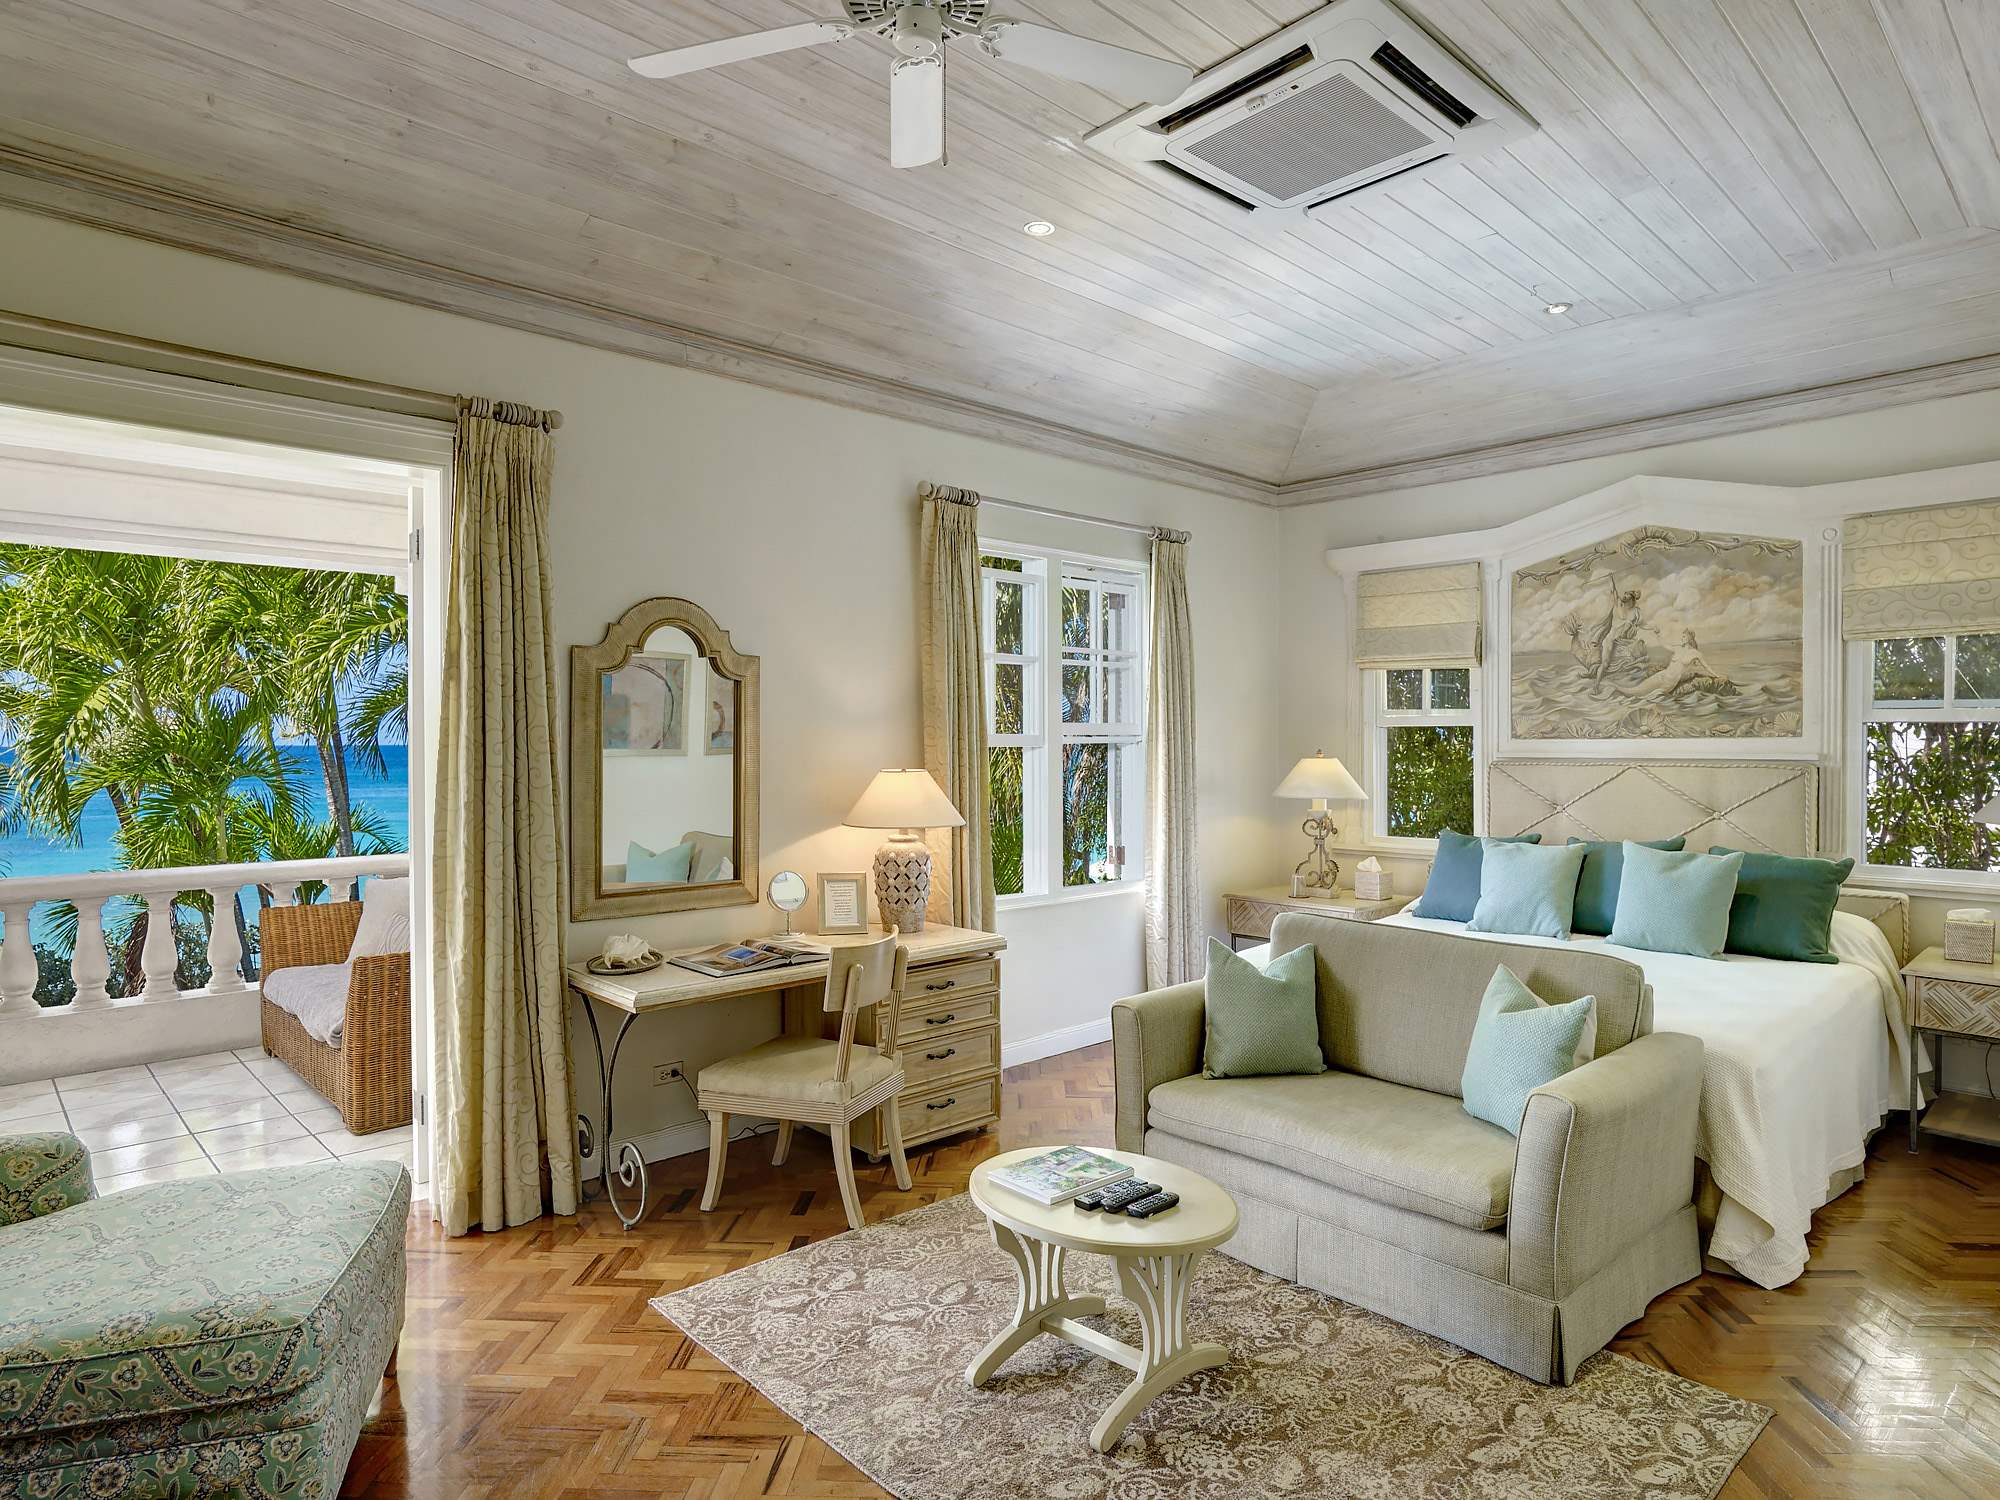 New Mansion, 4 bedroom villa in St. James & West Coast, Barbados Photo #10